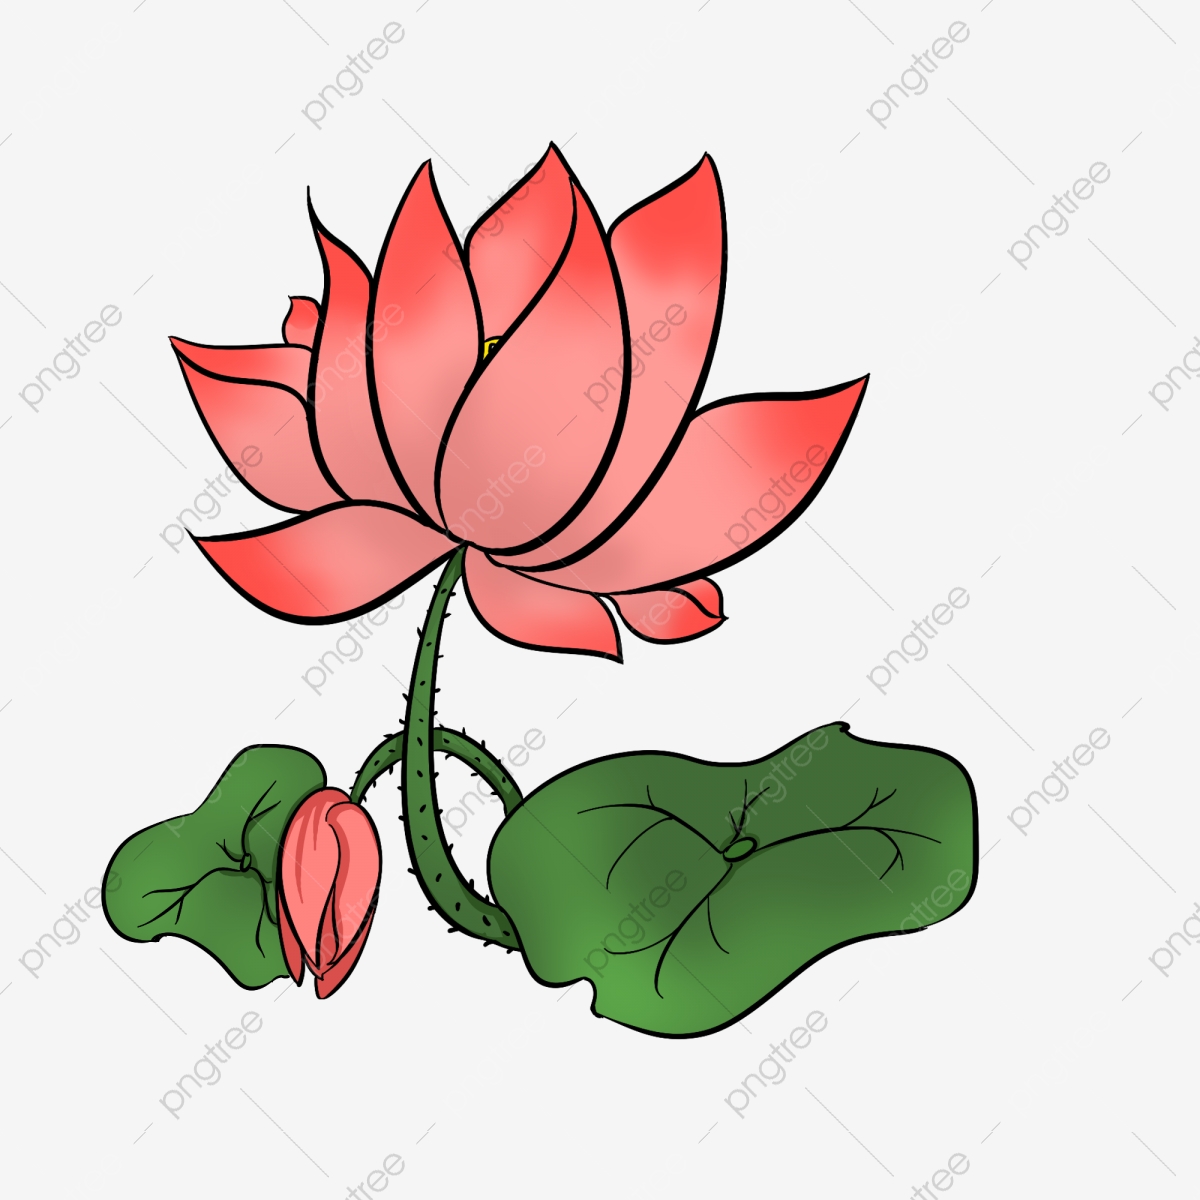 Lotus clipart beautiful, Lotus beautiful Transparent FREE for download ...